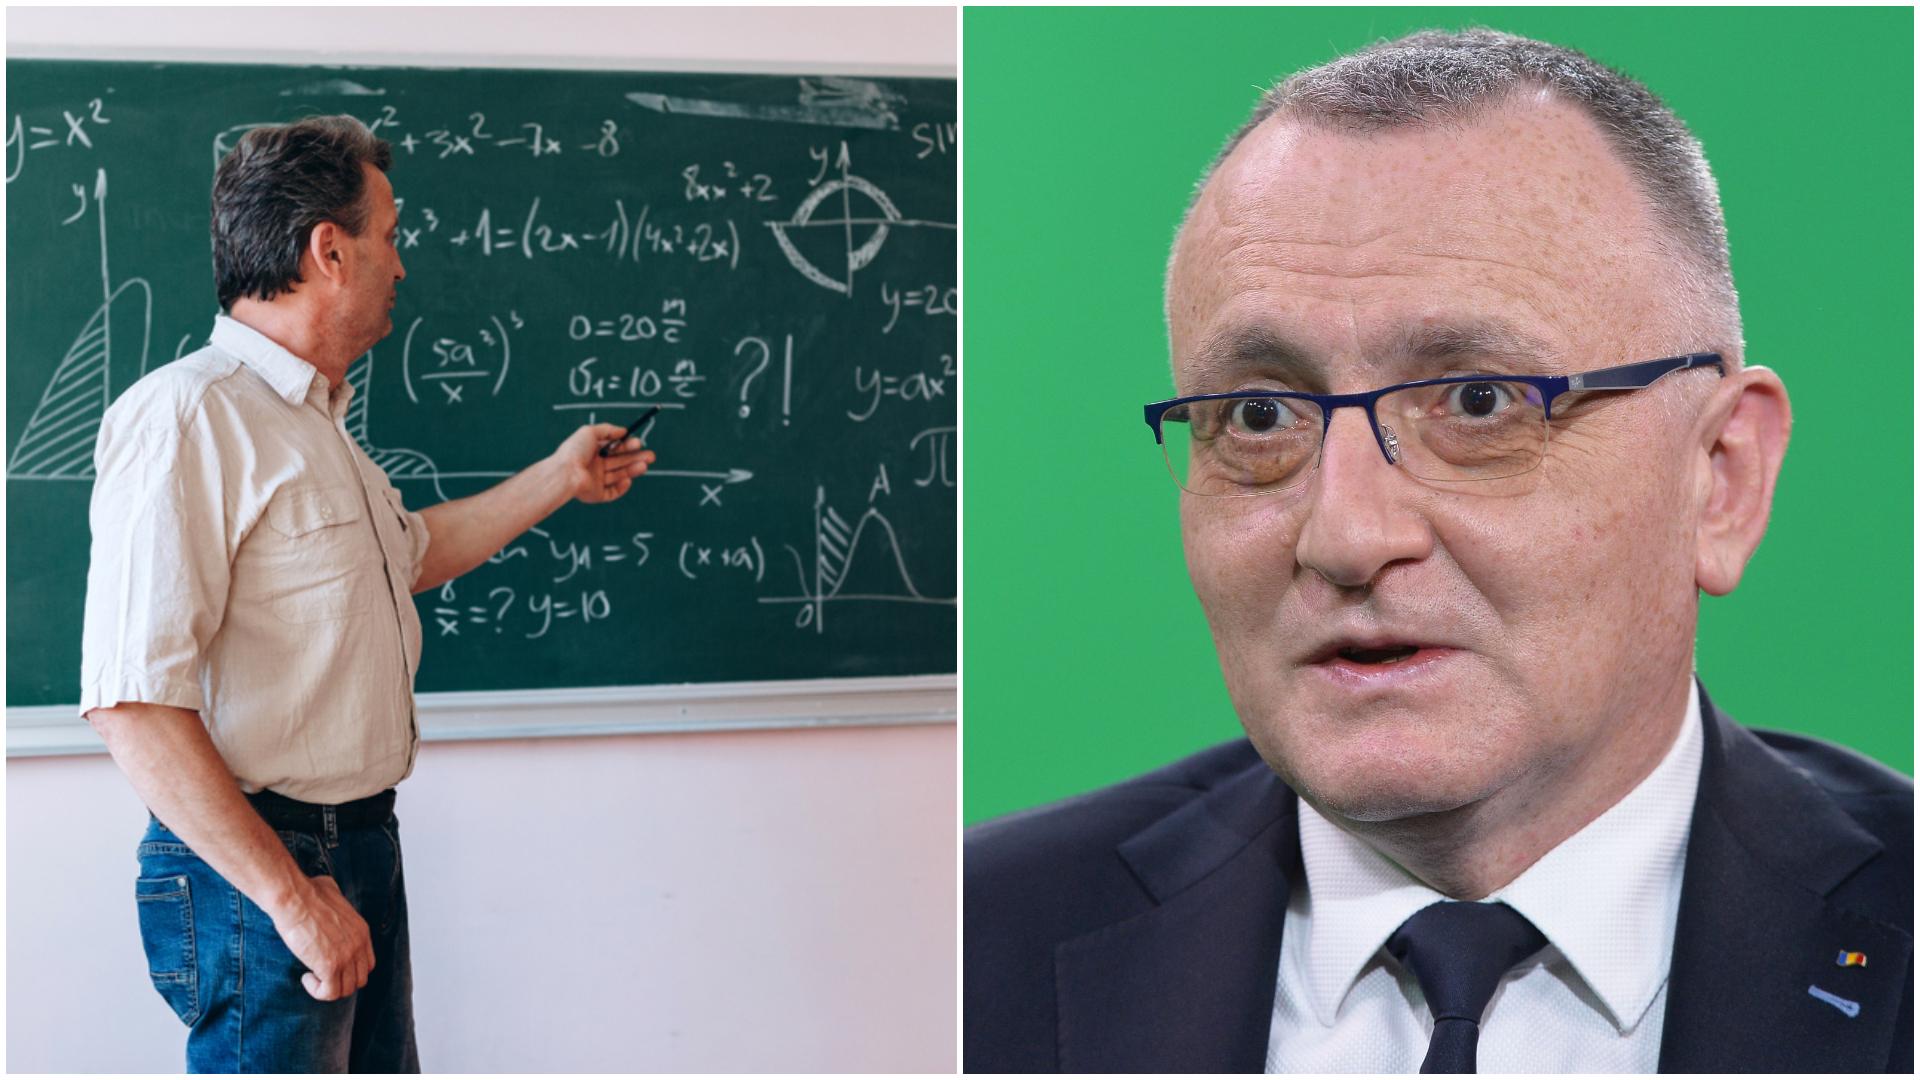 Colaj cu Sorin Cîmpeanu și un profesor de matematică